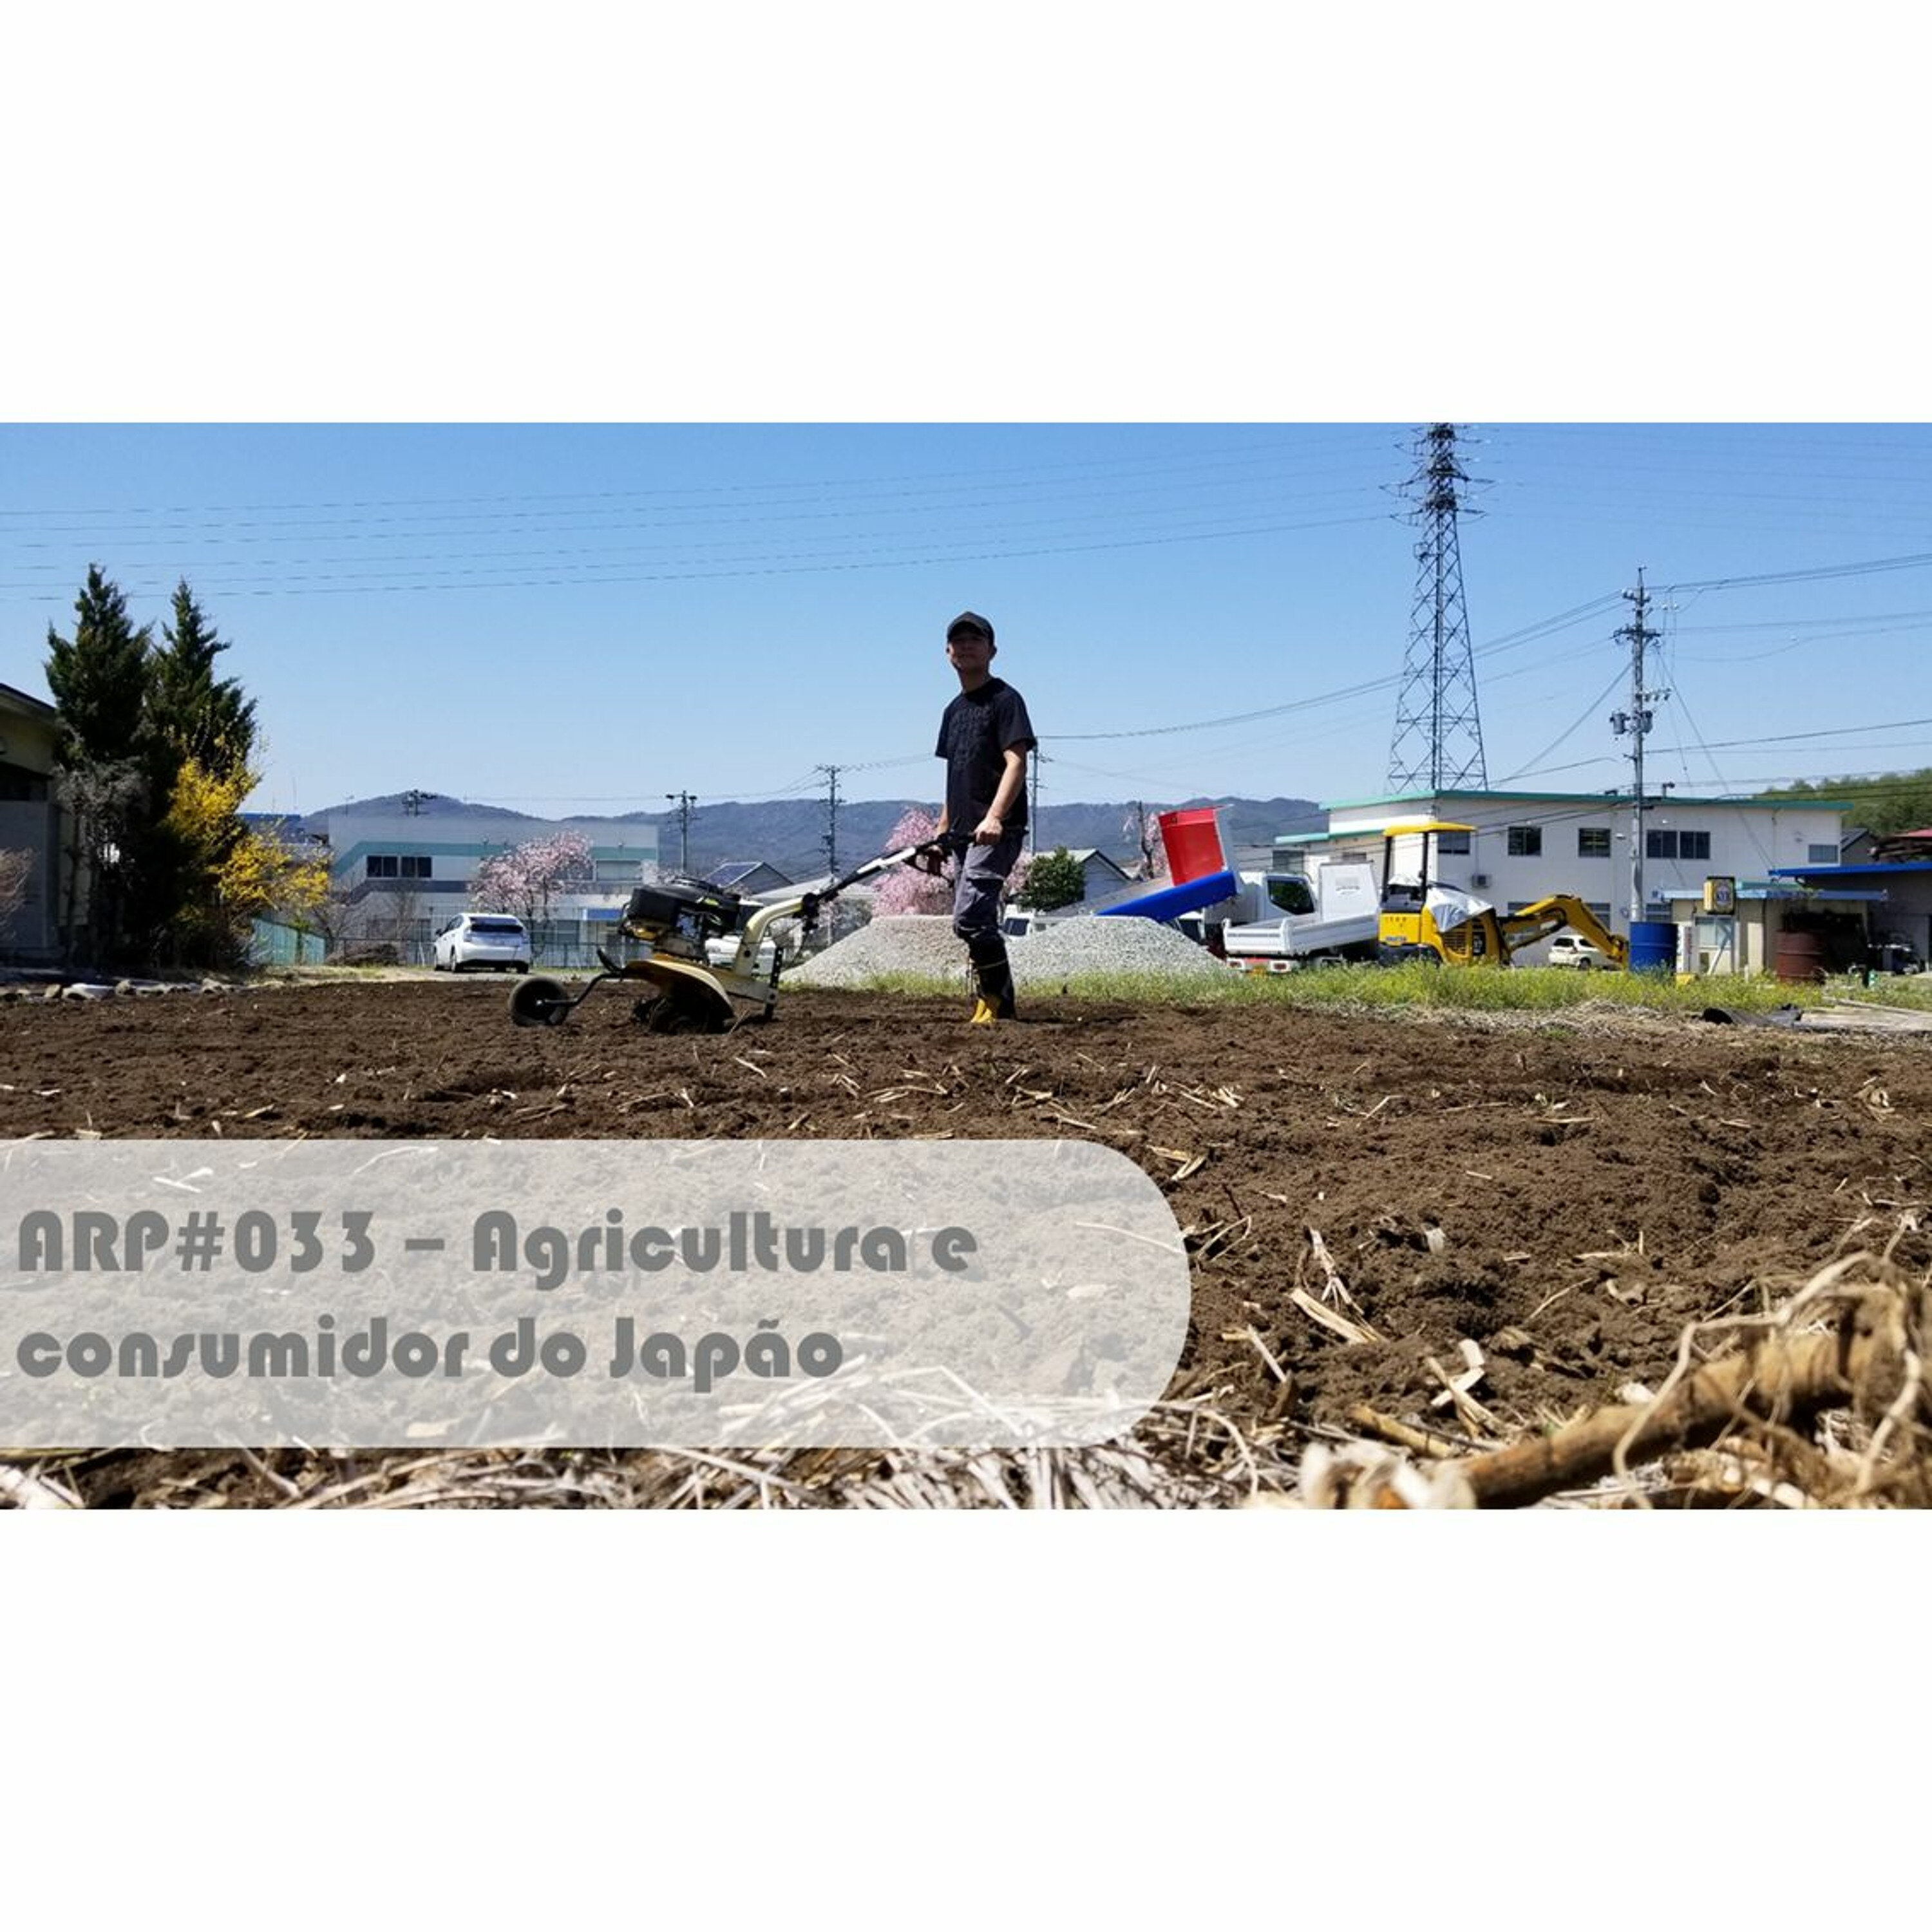 ARP#033 - Agricultura e consumidor do Japão